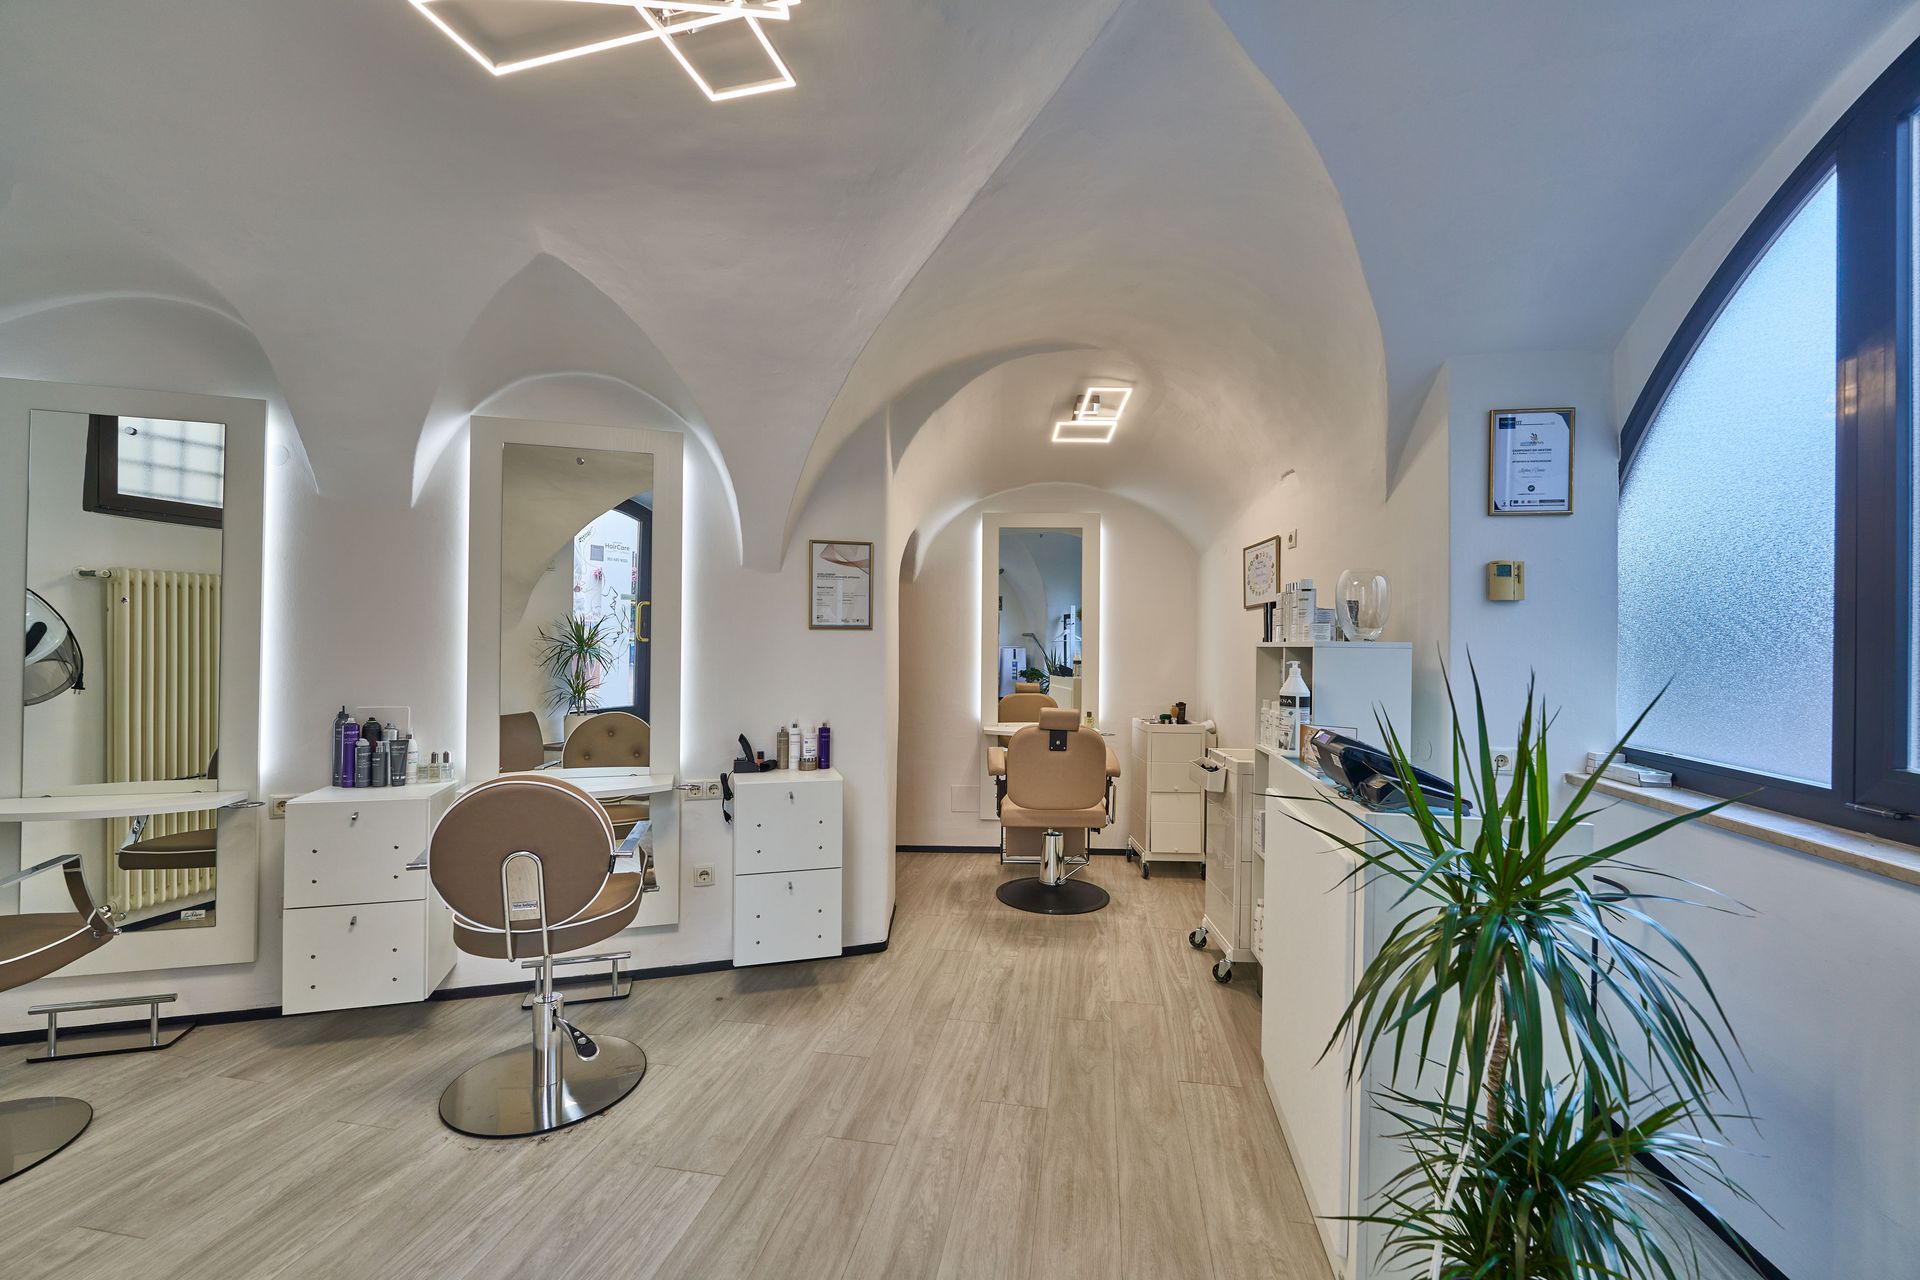 Friseursalon HairCare by Martin in Girlan - Gesamter Innenbereich mit Herrenstuhl und Empfang.